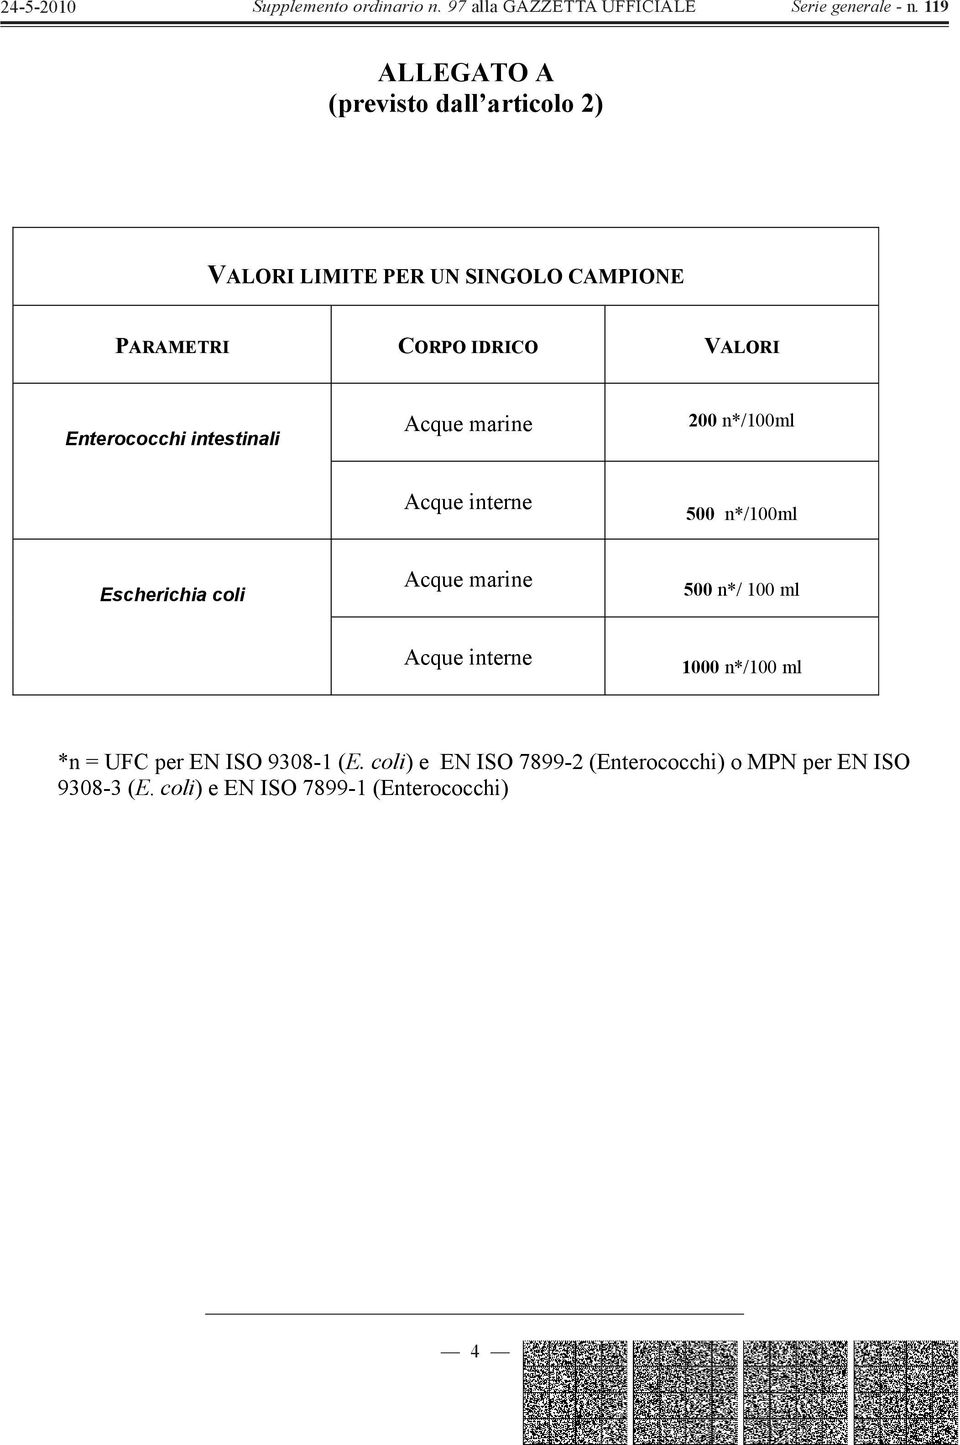 Escherichia coli Acque marine 500 n*/ 100 ml Acque interne 1000 n*/100 ml *n = UFC per EN ISO